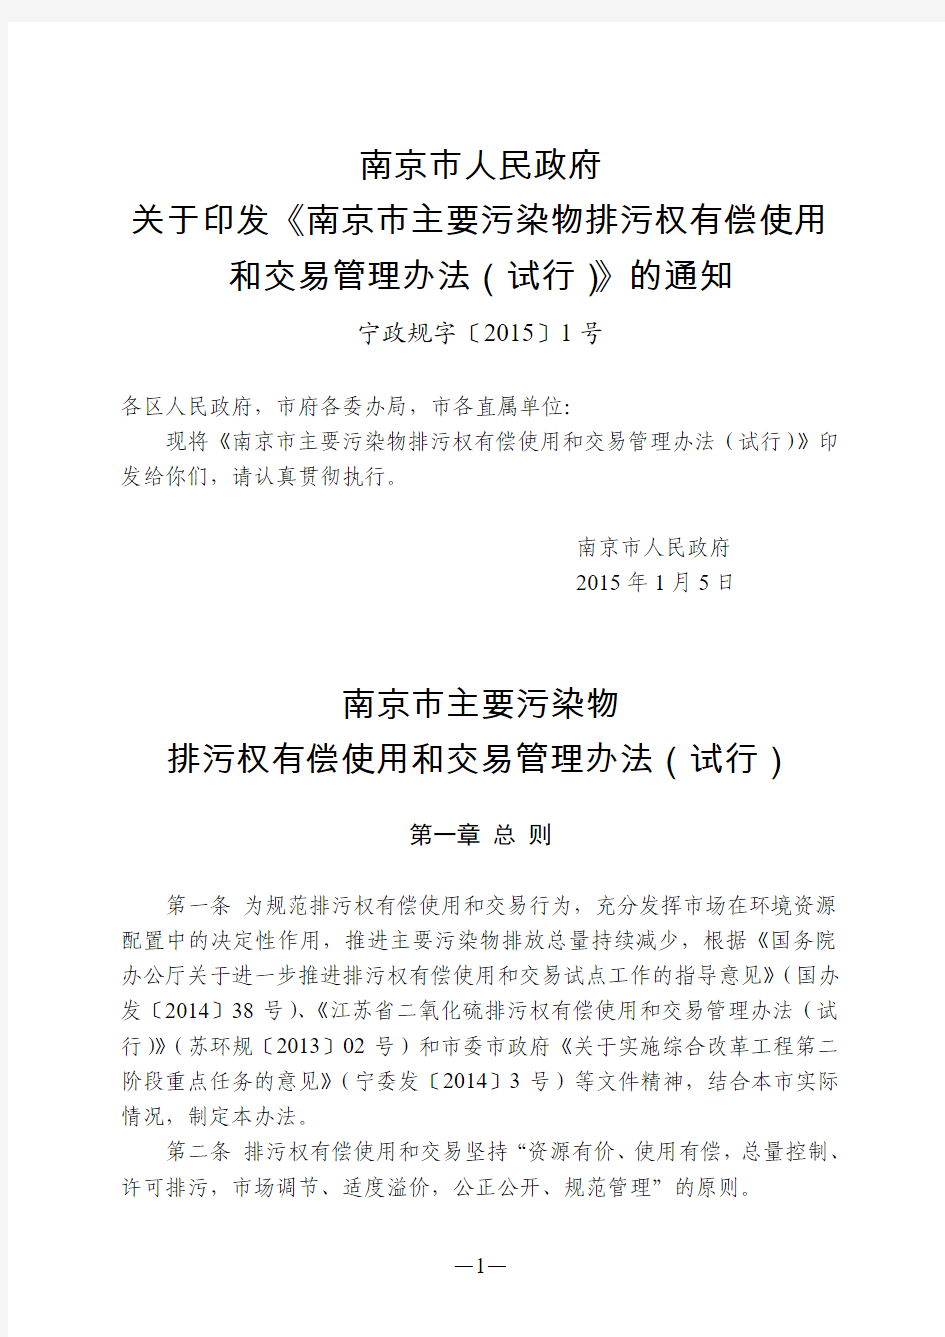 南京市主要污染物排污权有偿使用和交易管理办法(试行)